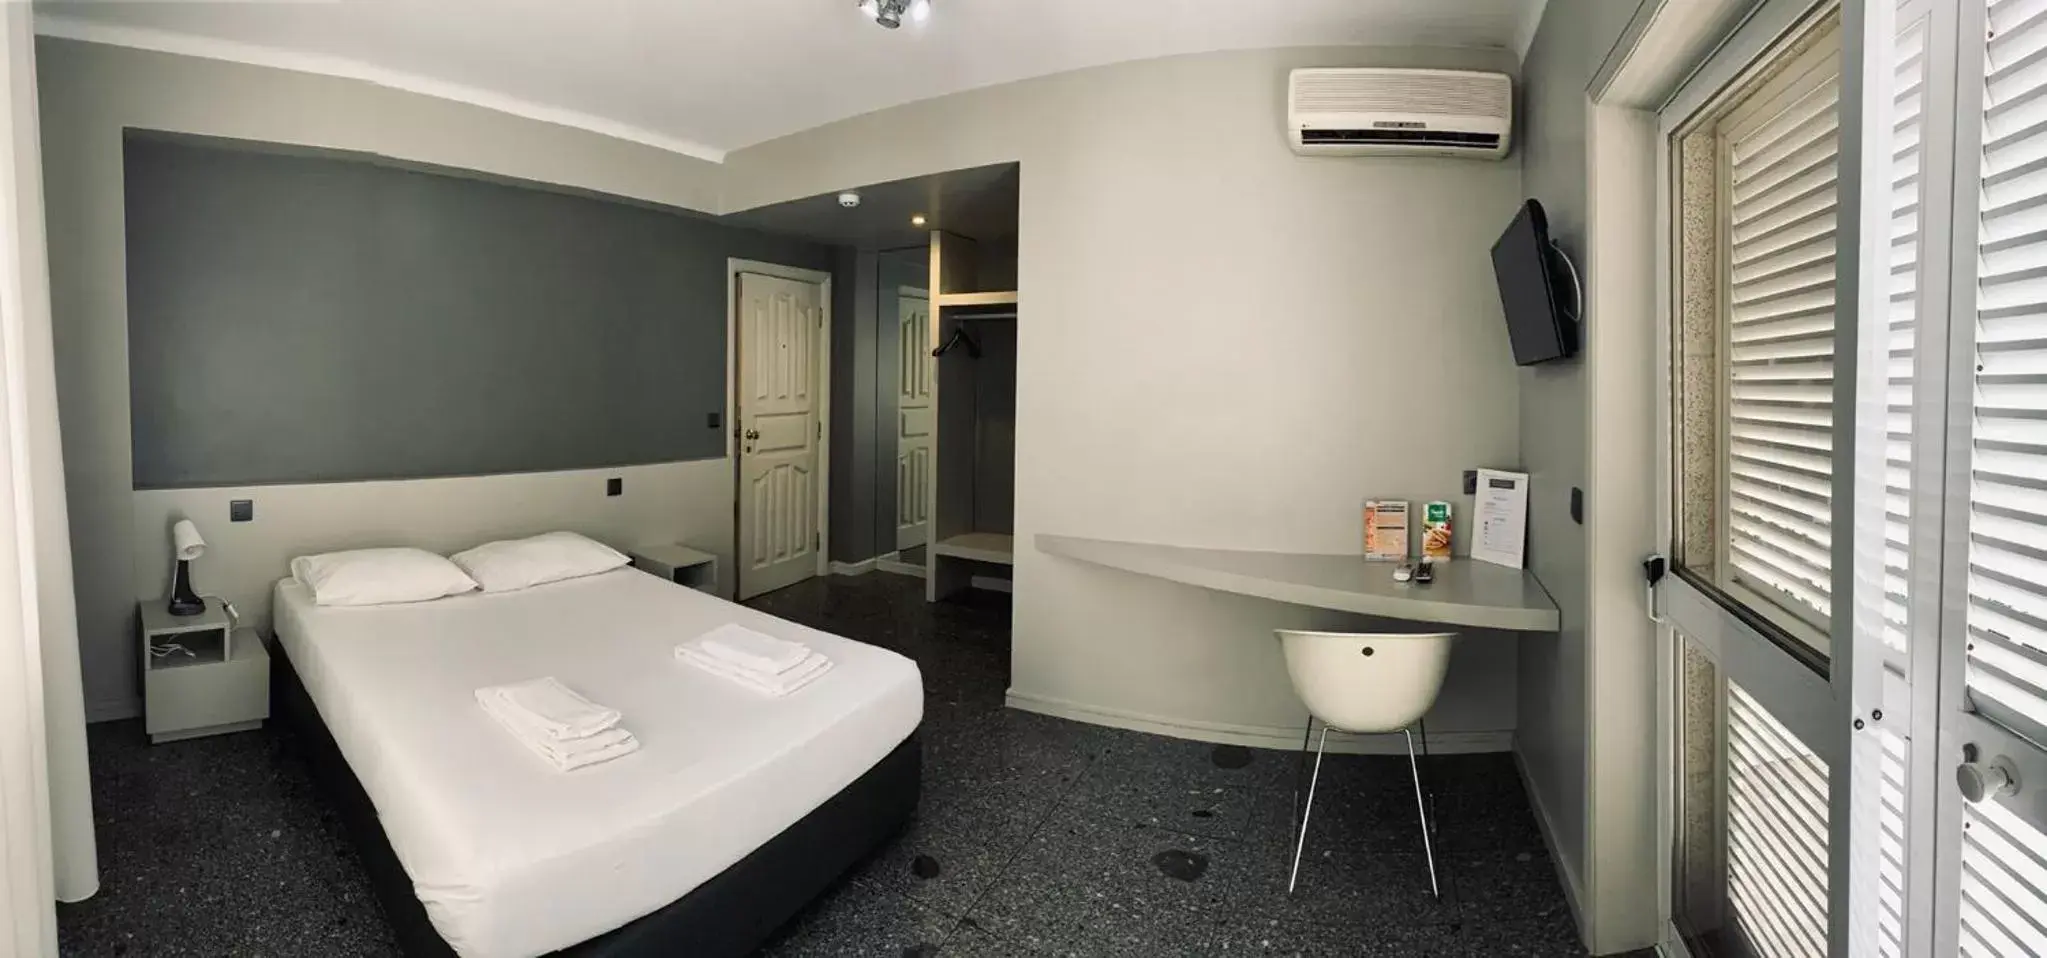 Bedroom, Bathroom in Hotel do Paço